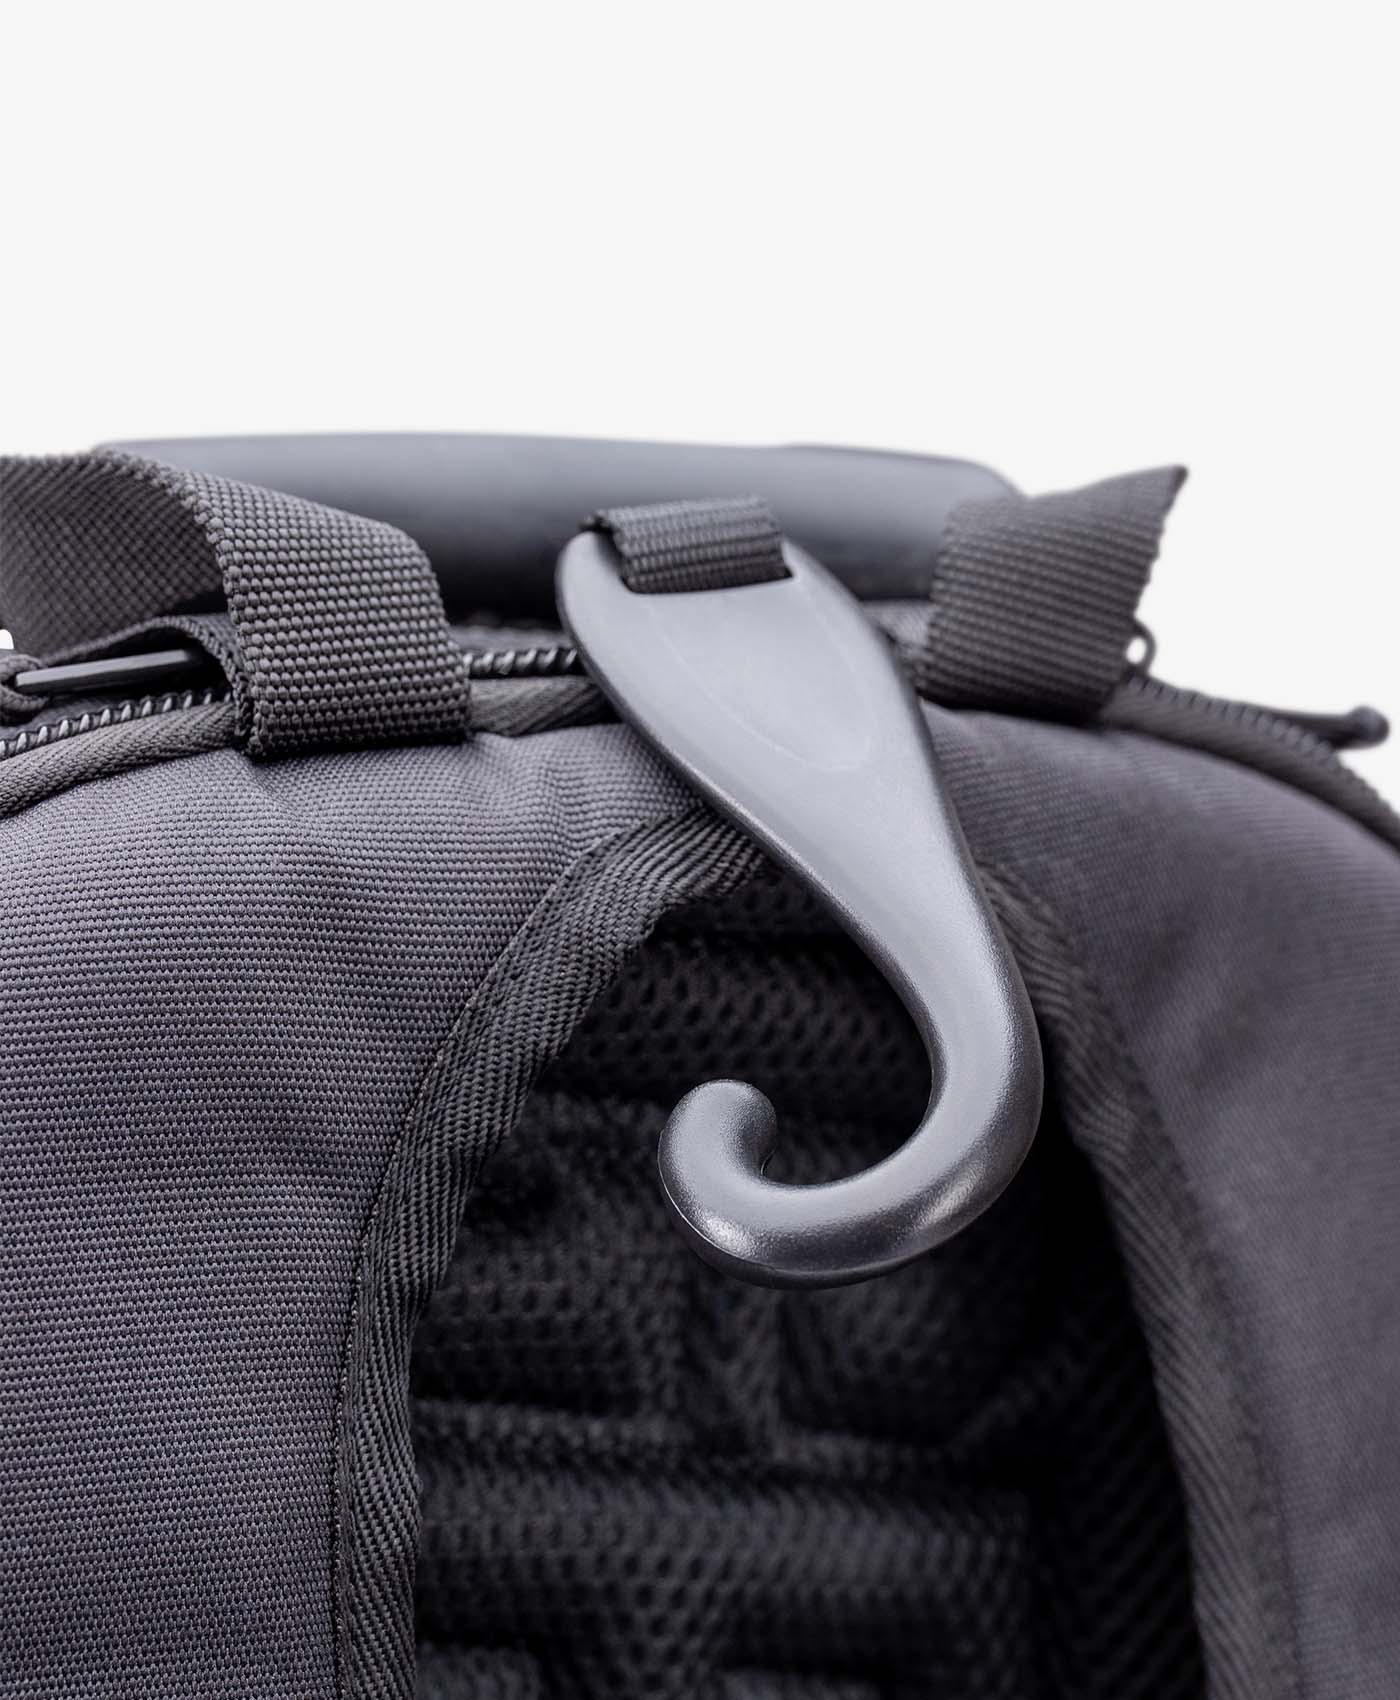 17'' - 2 Pocket Laptop Backpack - Mixi Luggage